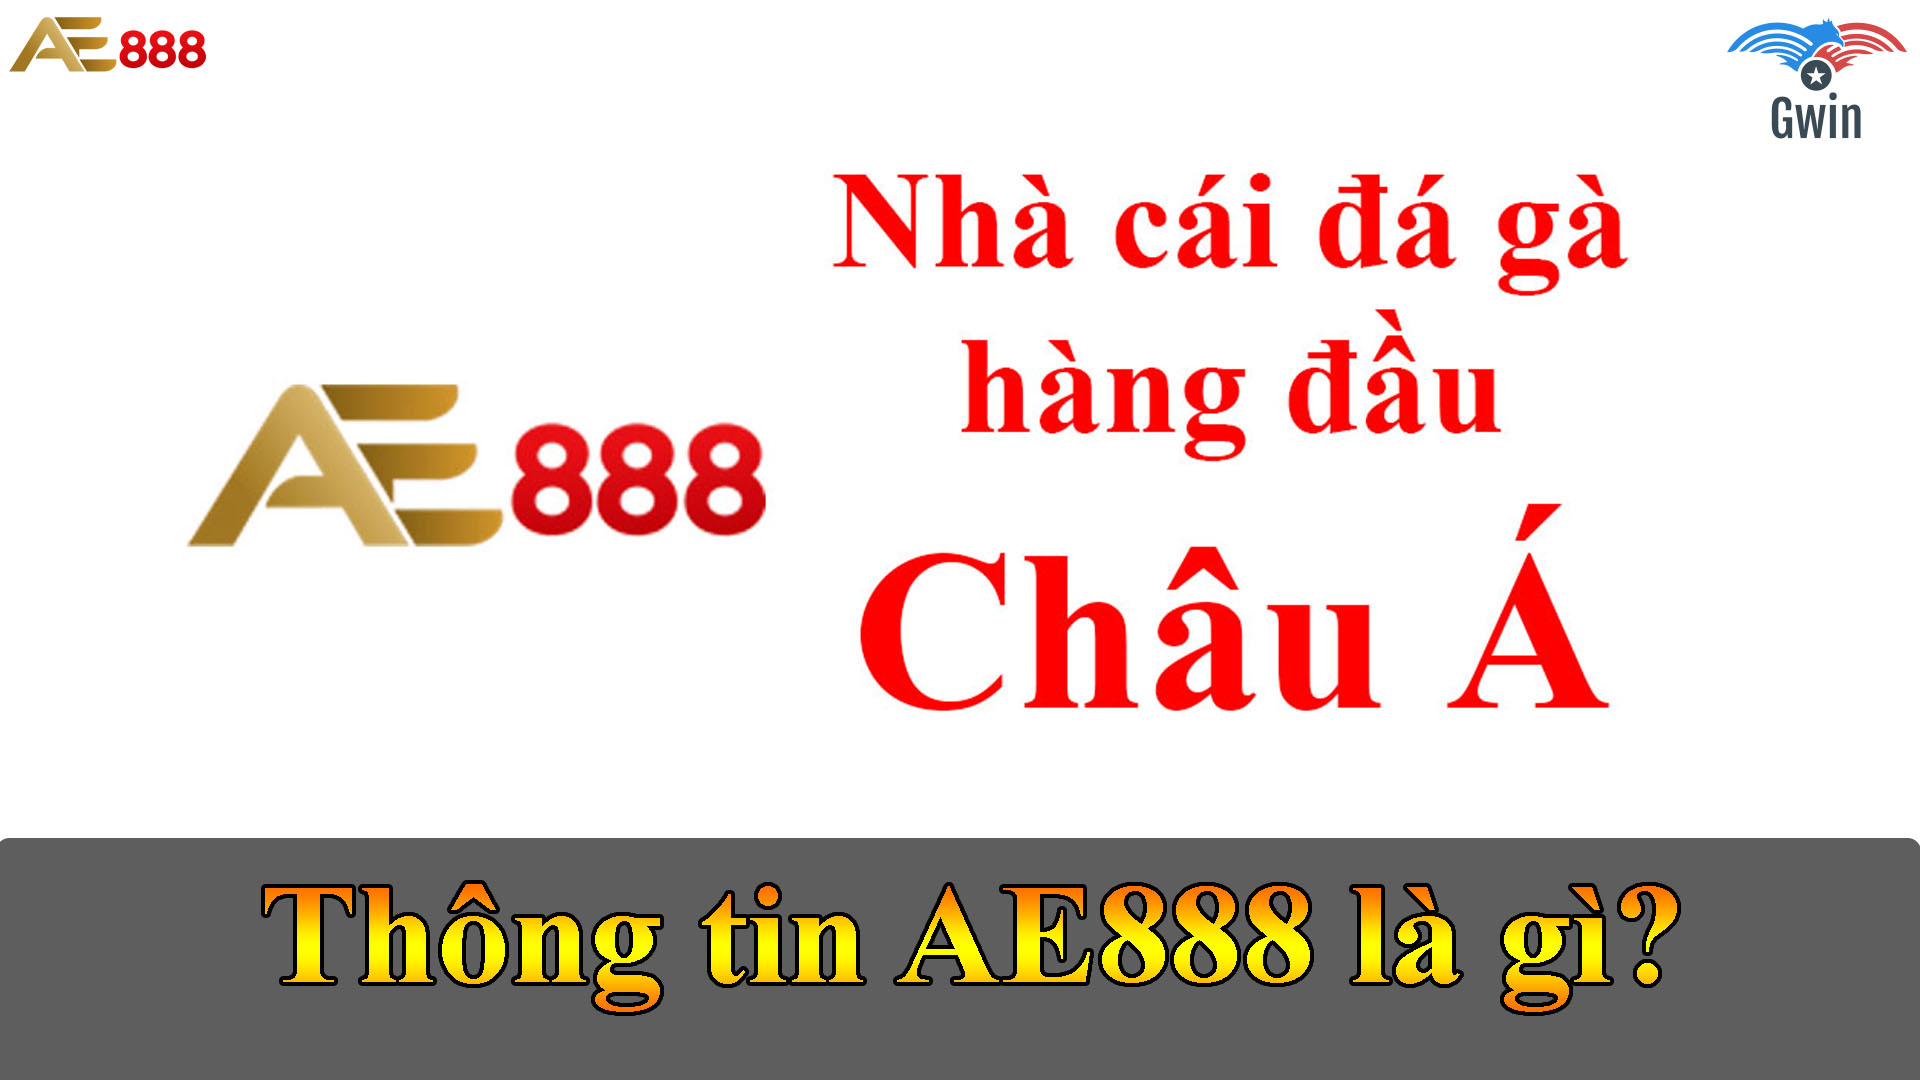 Thông tin AE888 là gì?